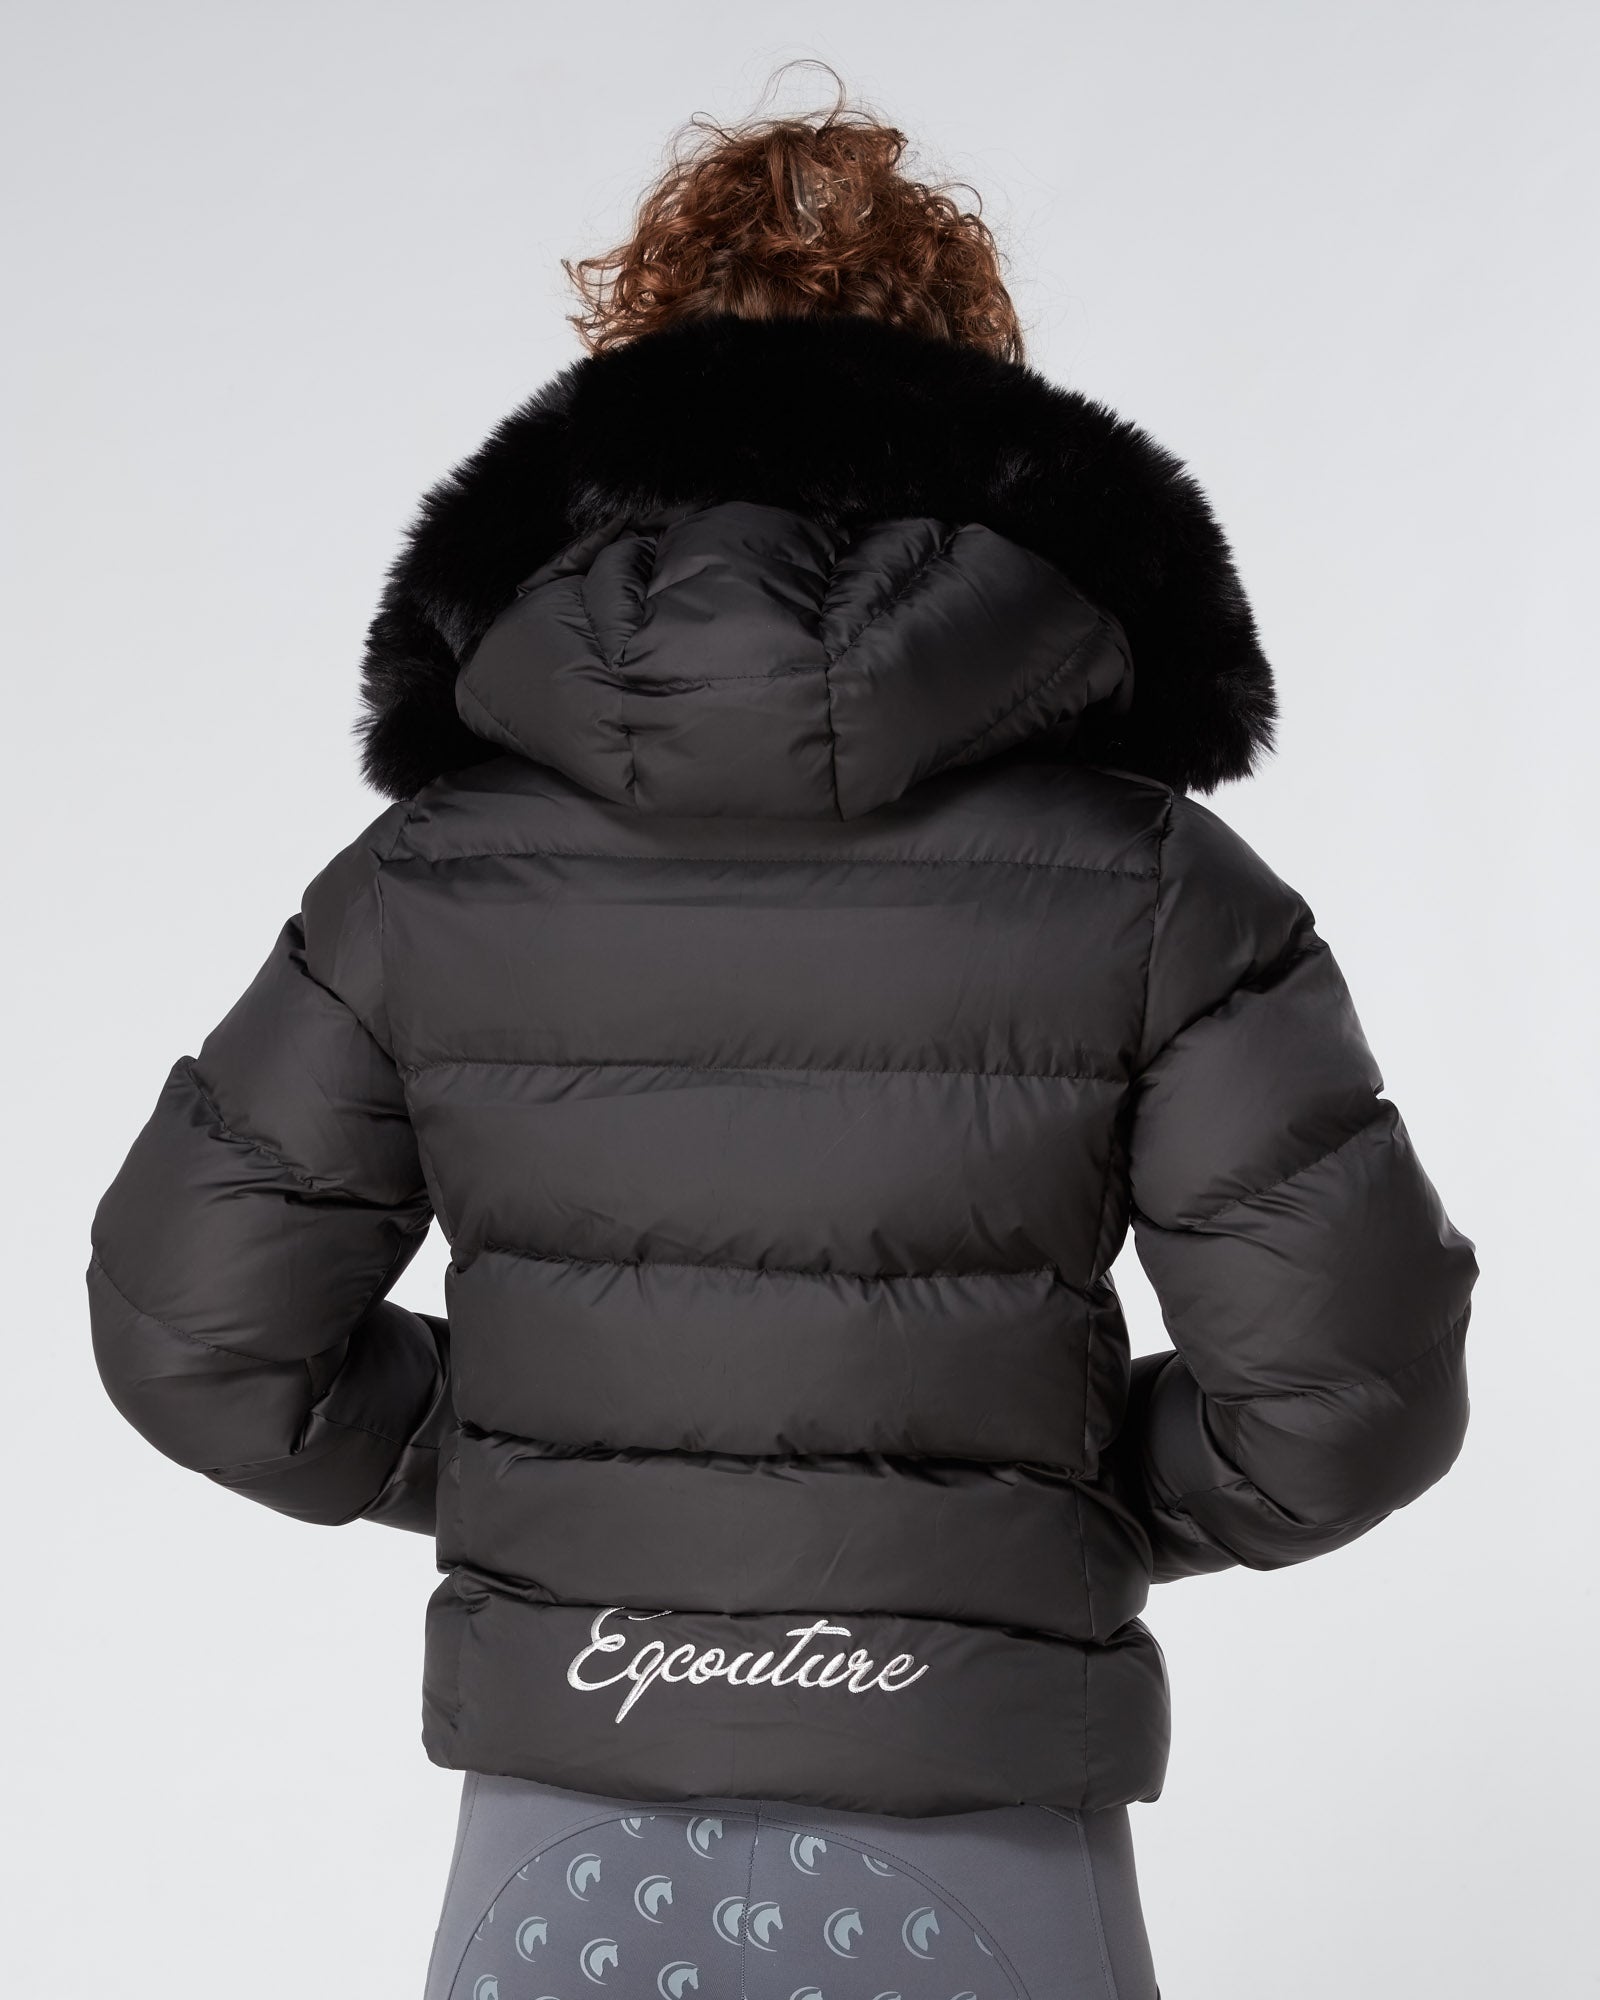 Exclusive Short Black Puffer Coat 3.0 / Jacket - Detachable Hood & Faux Fur